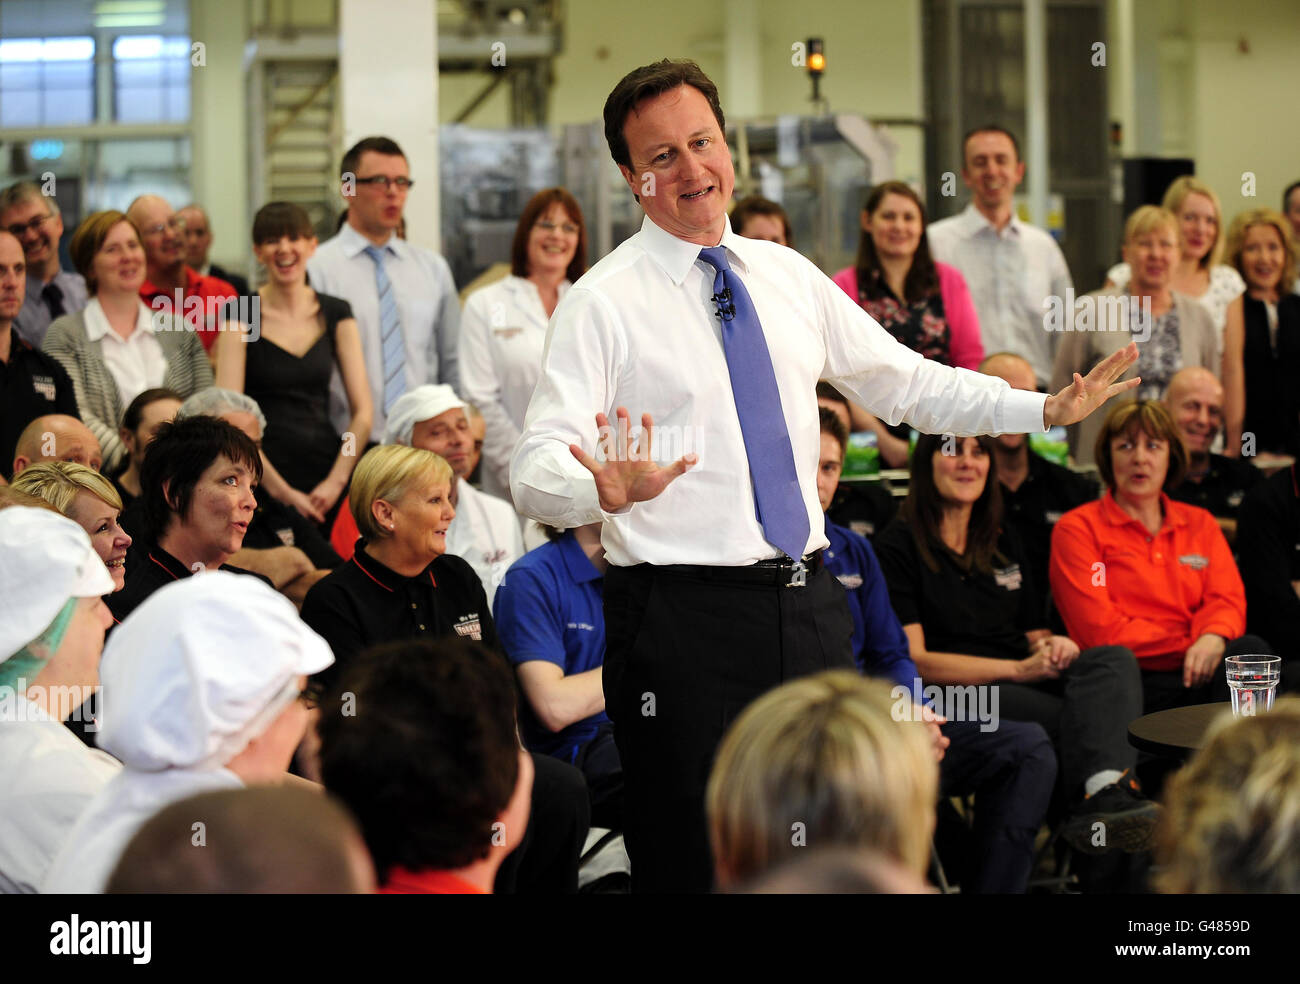 Premierminister David Cameron spricht während einer Fragestunde mit direkten Fragen und Antworten des Premierministers bei Tee- und Kaffeehändlern, Taylors of Harrogate in North Yorkshire. Stockfoto